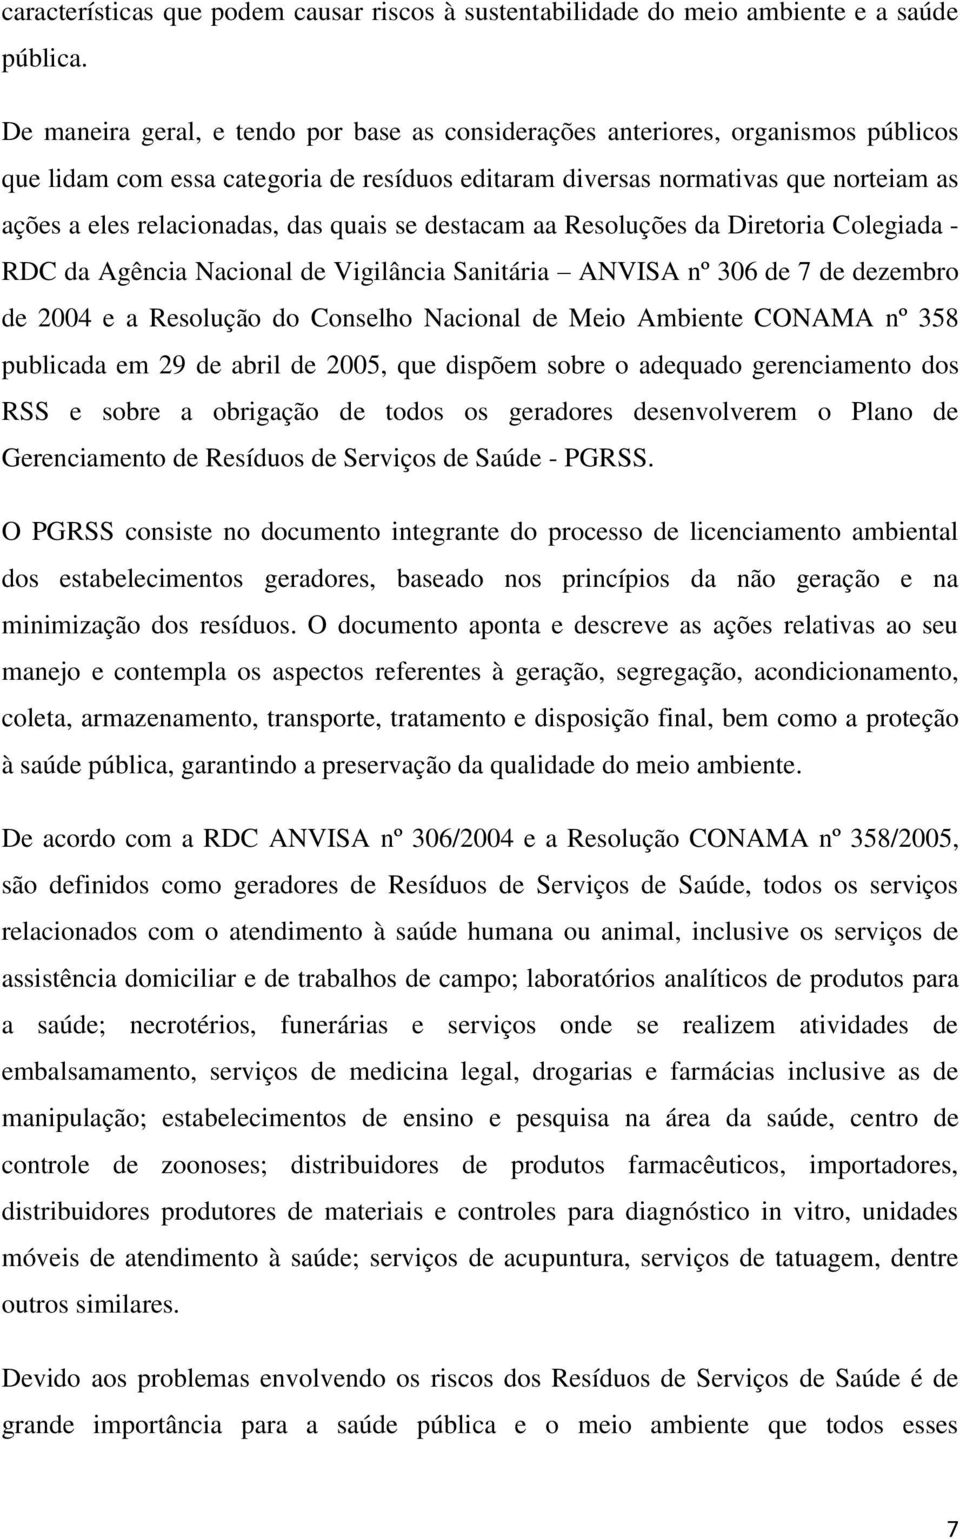 das quais se destacam aa Resoluções da Diretoria Colegiada - RDC da Agência Nacional de Vigilância Sanitária ANVISA nº 306 de 7 de dezembro de 2004 e a Resolução do Conselho Nacional de Meio Ambiente